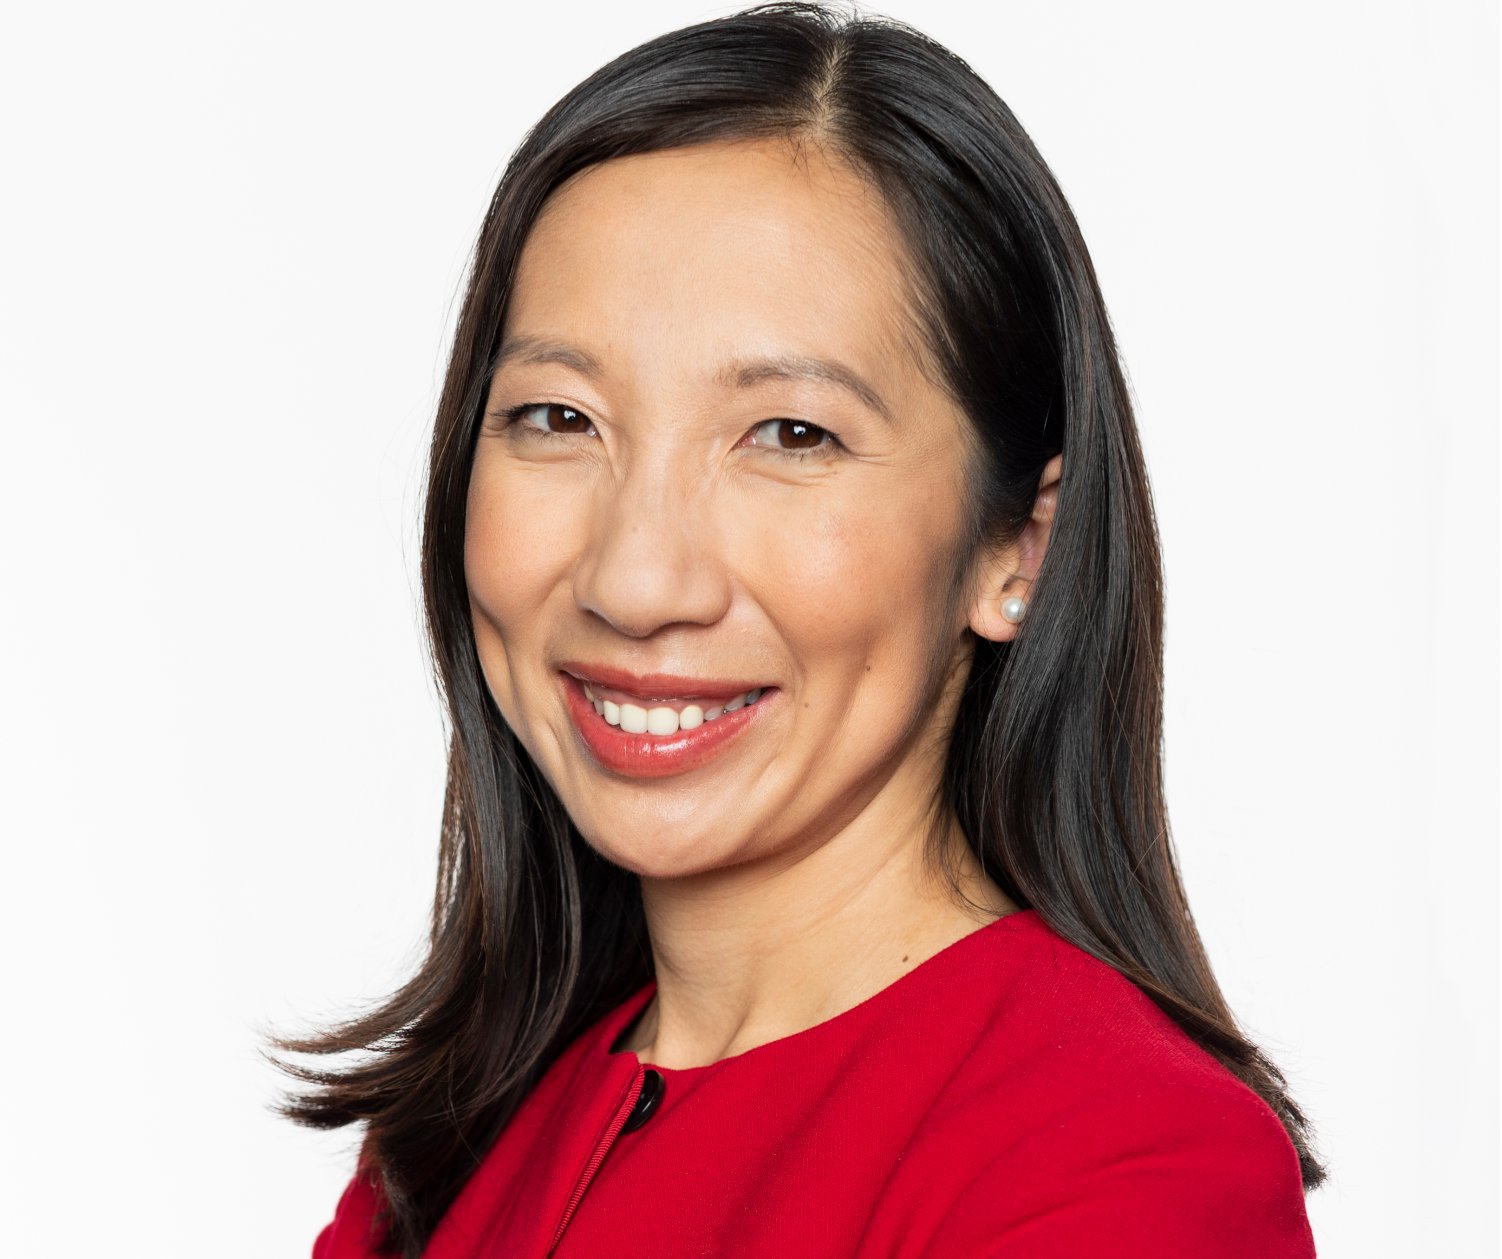 Healthwatch with Dr. Leana Wen: Heat hazards, Paxlovid, CDC chief